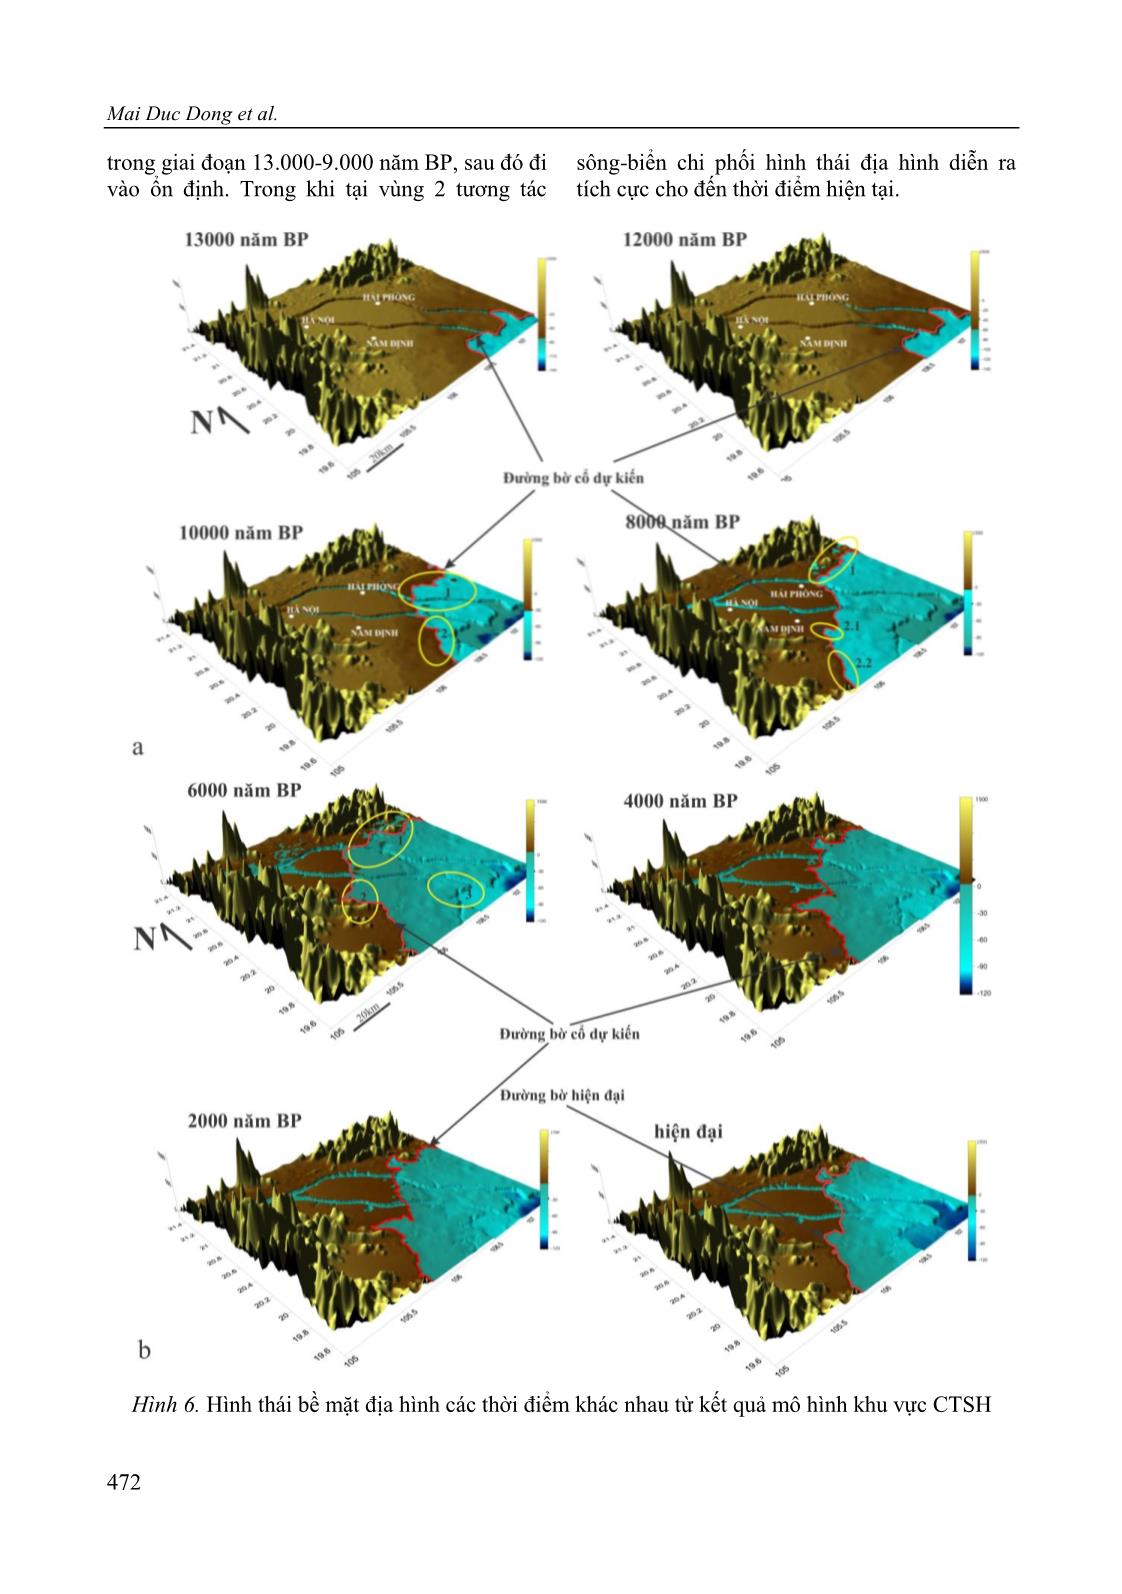 Ứng dụng mô hình số Simclast nghiên cứu sự phát triển của châu thổ sông Hồng giai đoạn Pleistocen muộn-Holocen trang 10